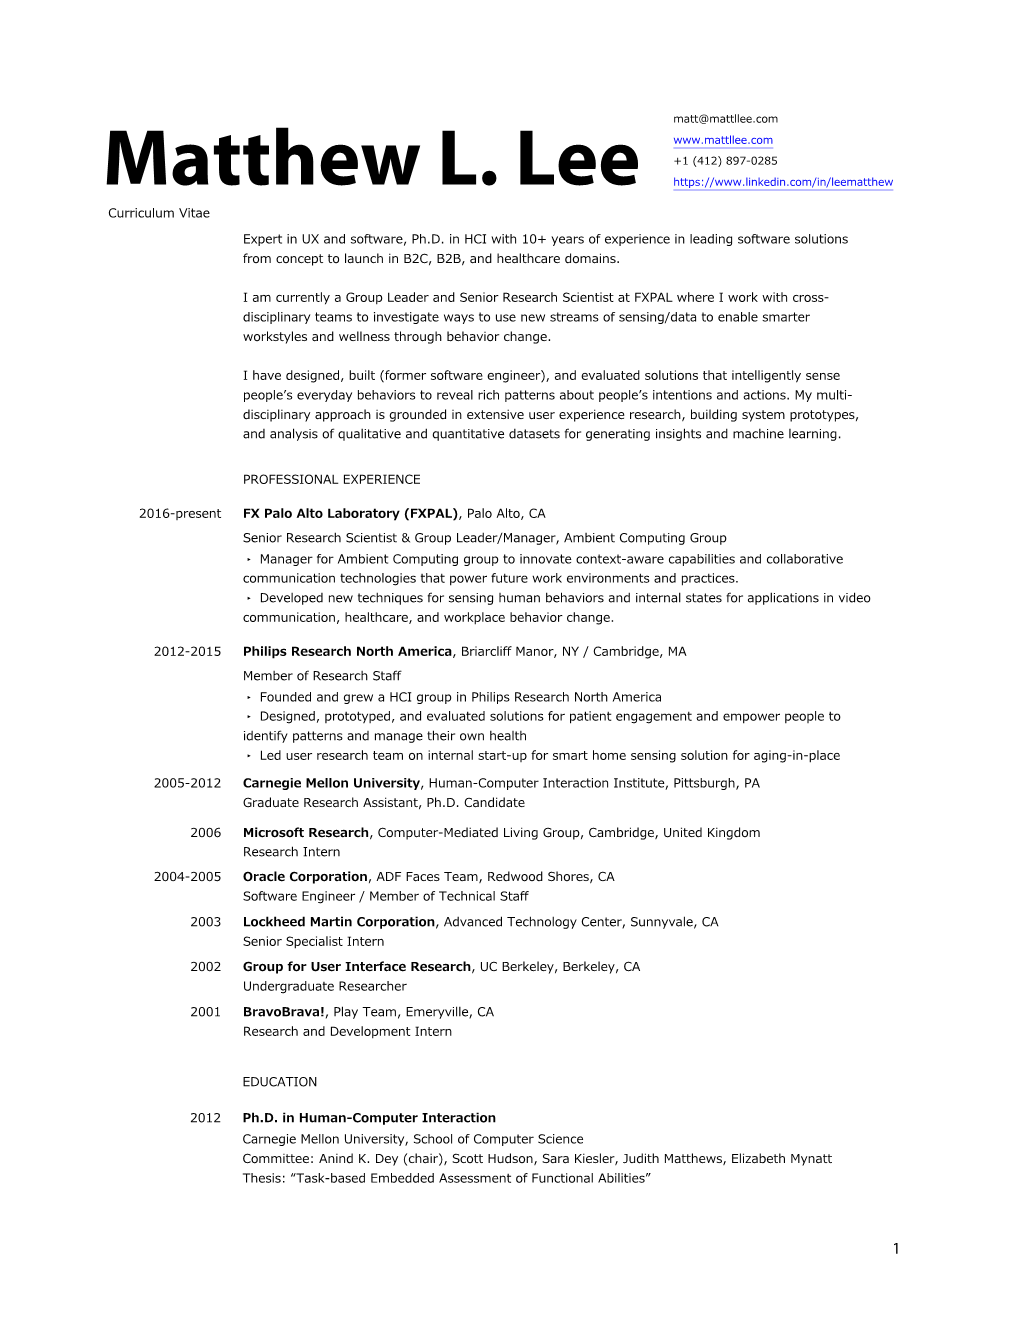 Matthew L. Lee Curriculum Vitae